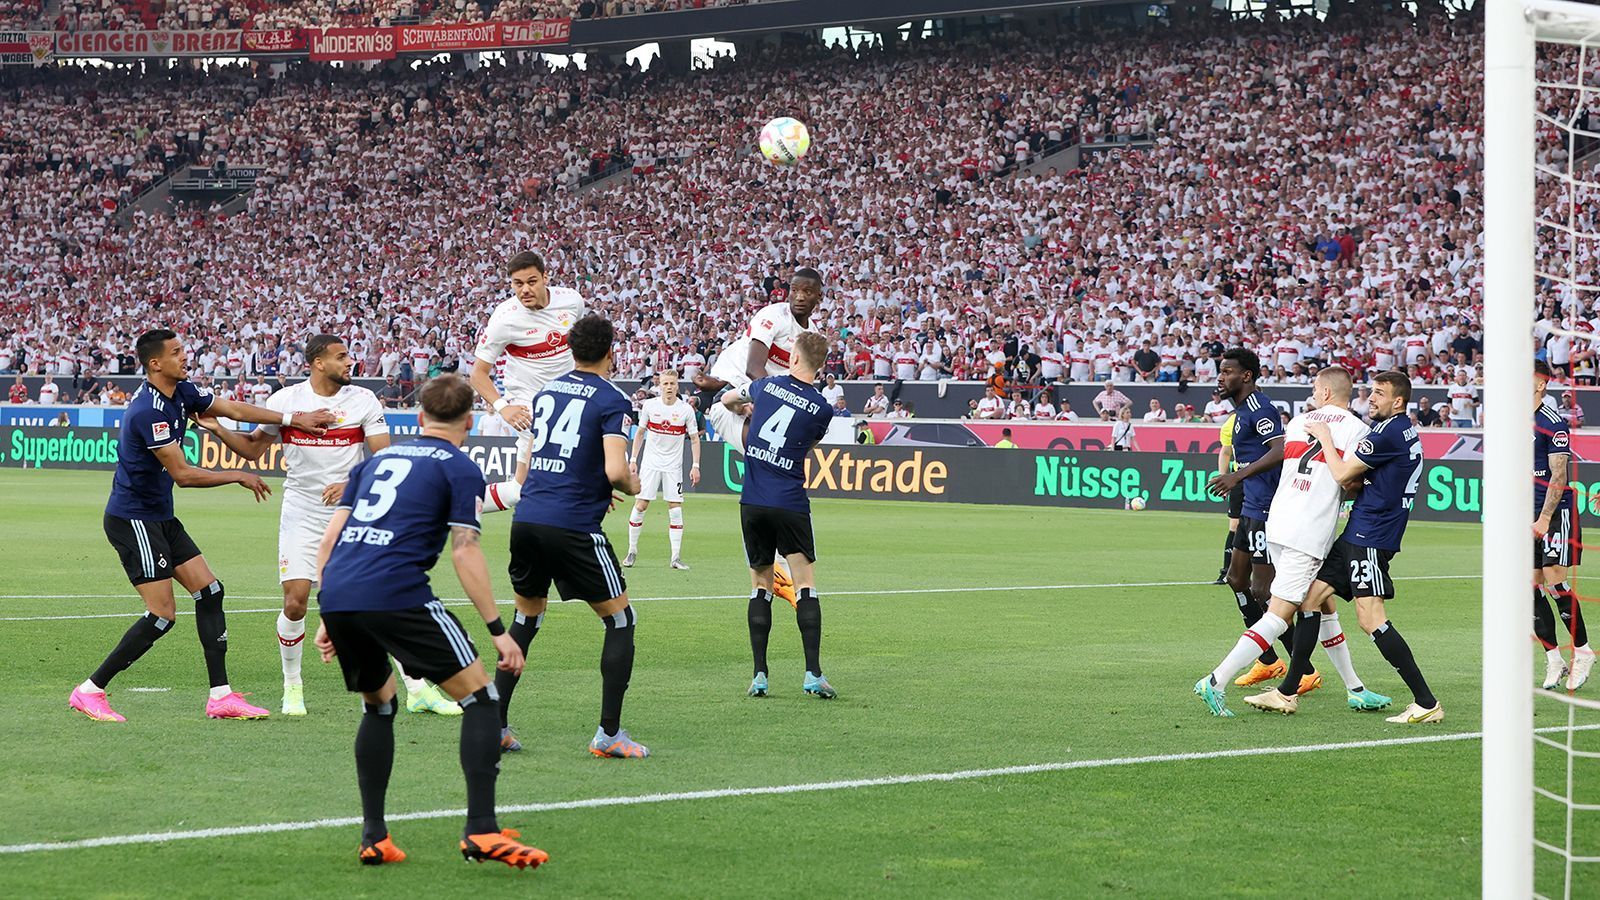 
                <strong>VfB erstligareif, HSV desaströs: Die Noten zur Relegation</strong><br>
                Das ist ein Statement in der Relegation! Der VfB Stuttgart hat gegen den Zweitligisten Hamburger SV den Willen, in der Bundesliga zu bleiben, mit einem 3:0 im Hinspiel deutlich unterstrichen. Wir haben beide Mannschaften benotet.Das Rückspiel zwischen dem HSV und dem VfB Stuttgart seht ihr am 5. Juni ab 20:15 Uhr live in SAT.1 und auf ran.de!
              